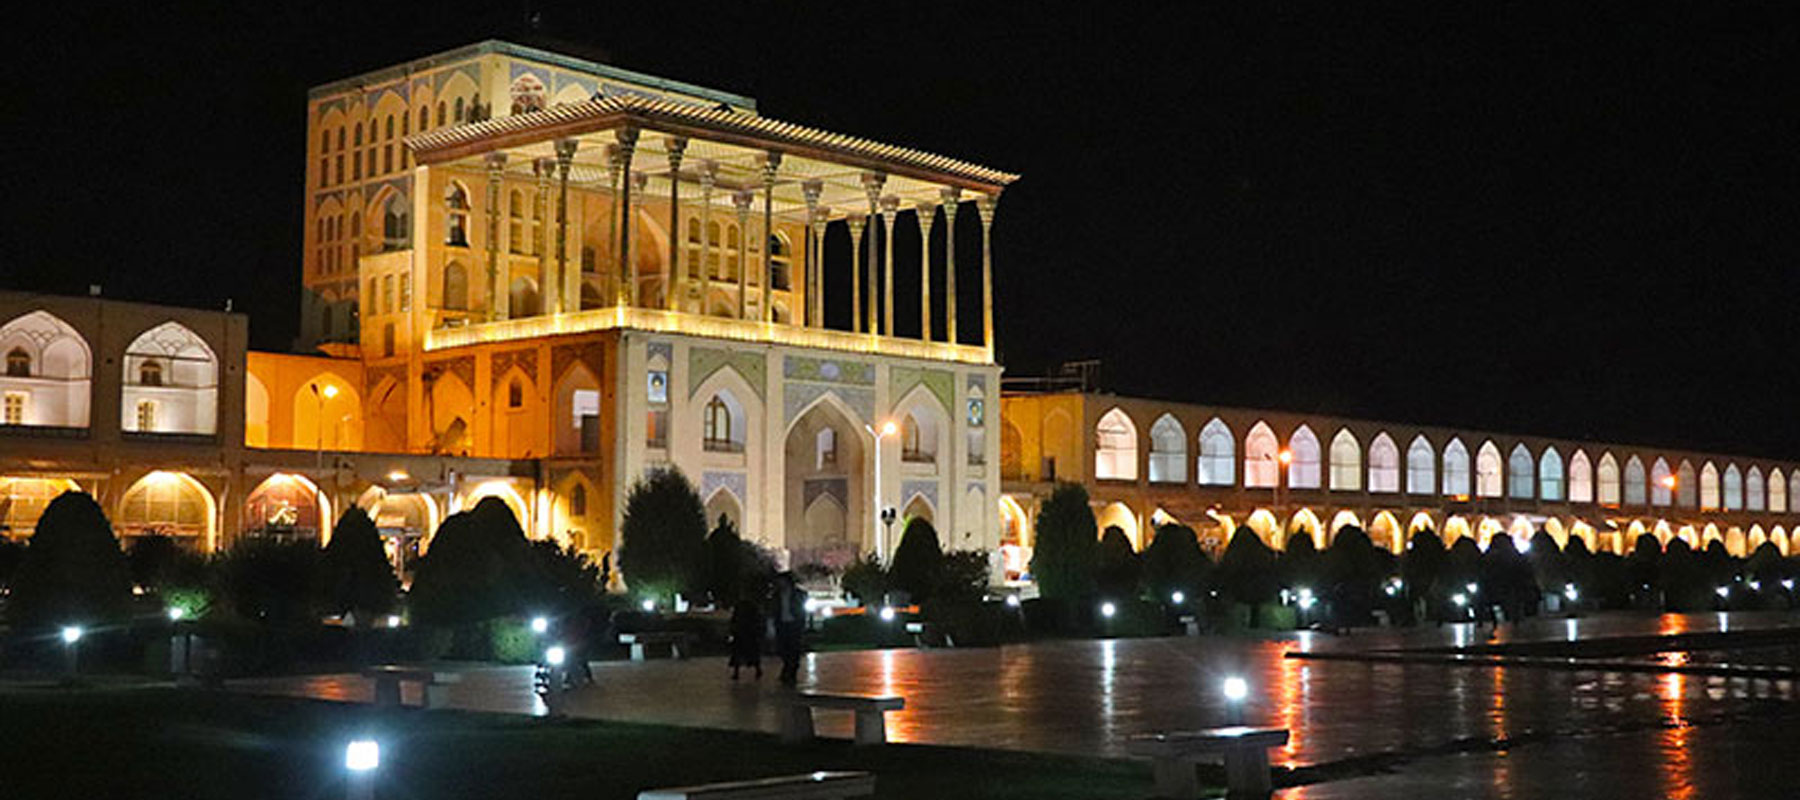 قصرعالي قابو: أعجوبة أصفهان المعمارية الملكية